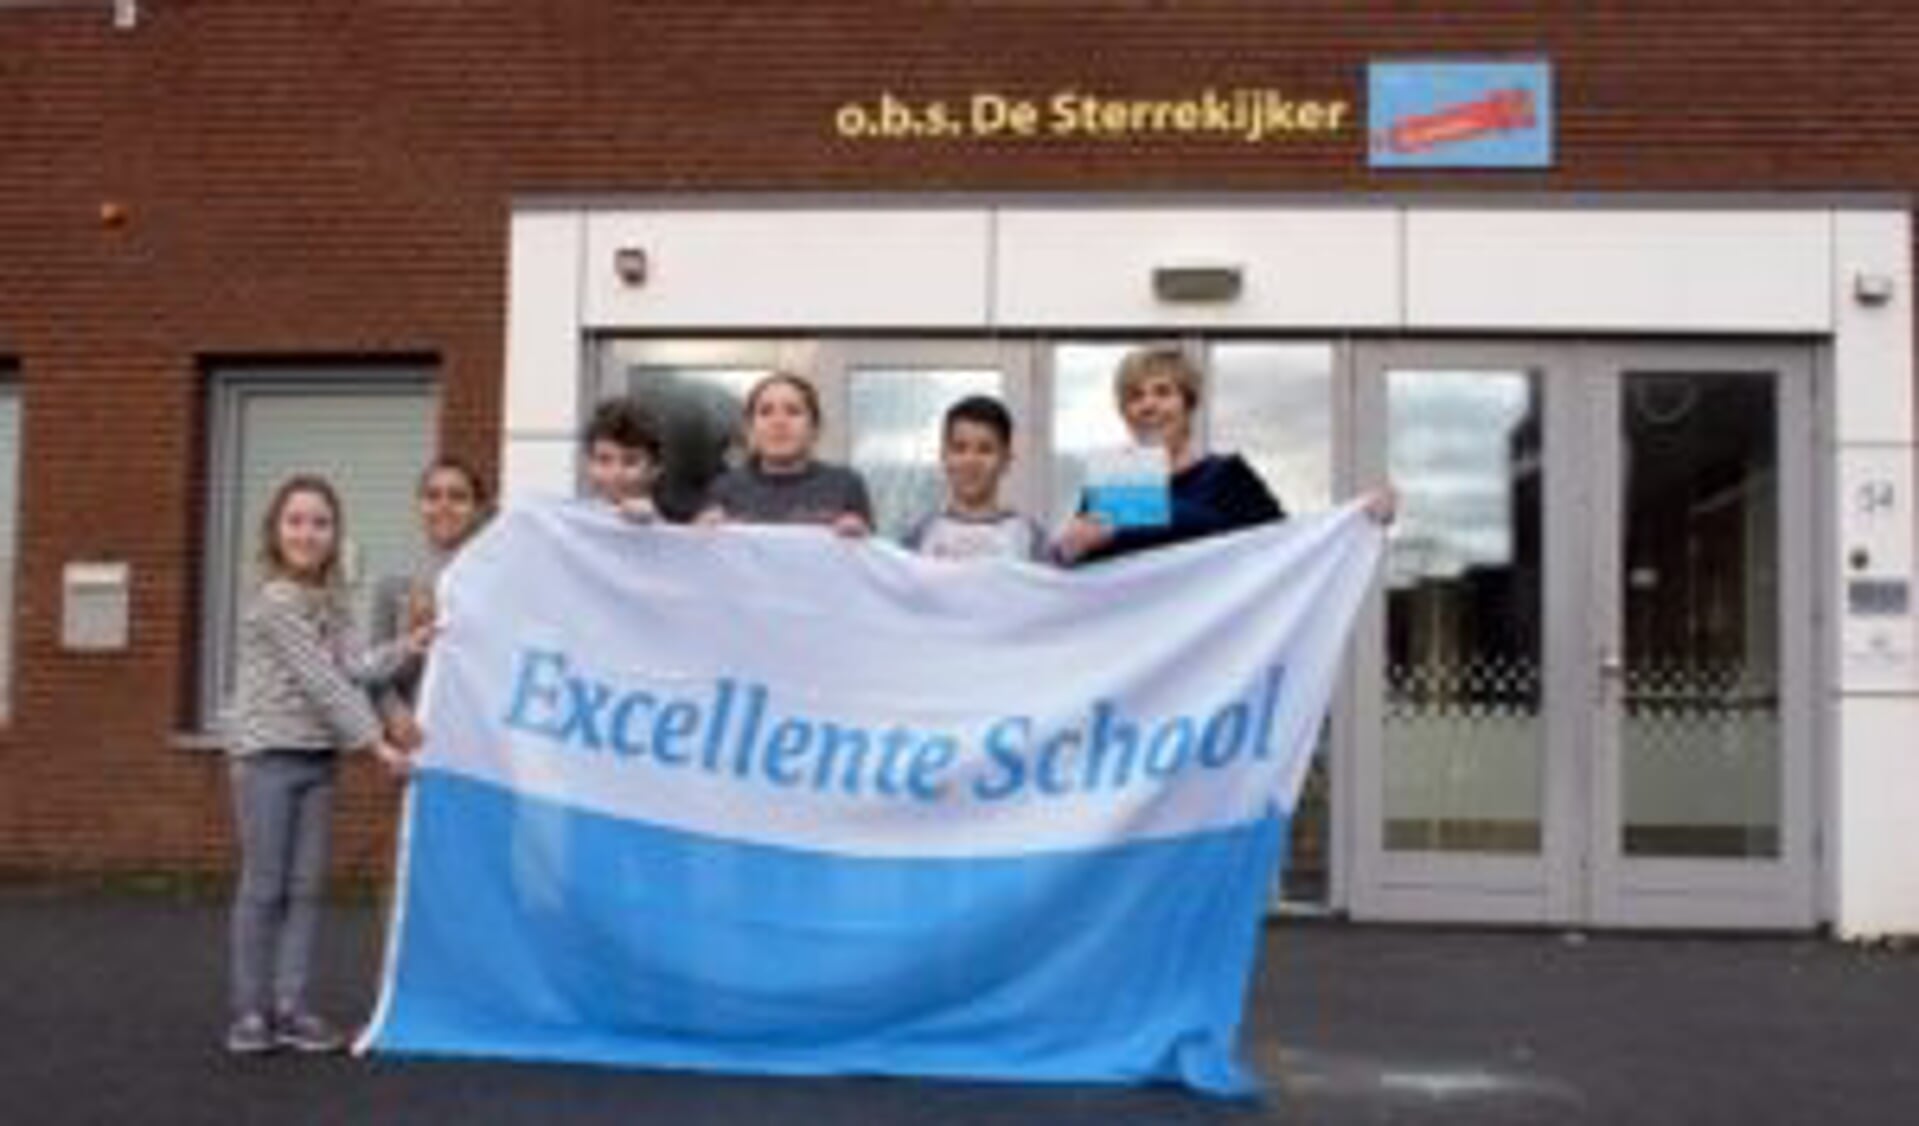 OBS De Sterrekijker is in Beverwijk de enige school die uitgeroepen is tot een Excellente School.